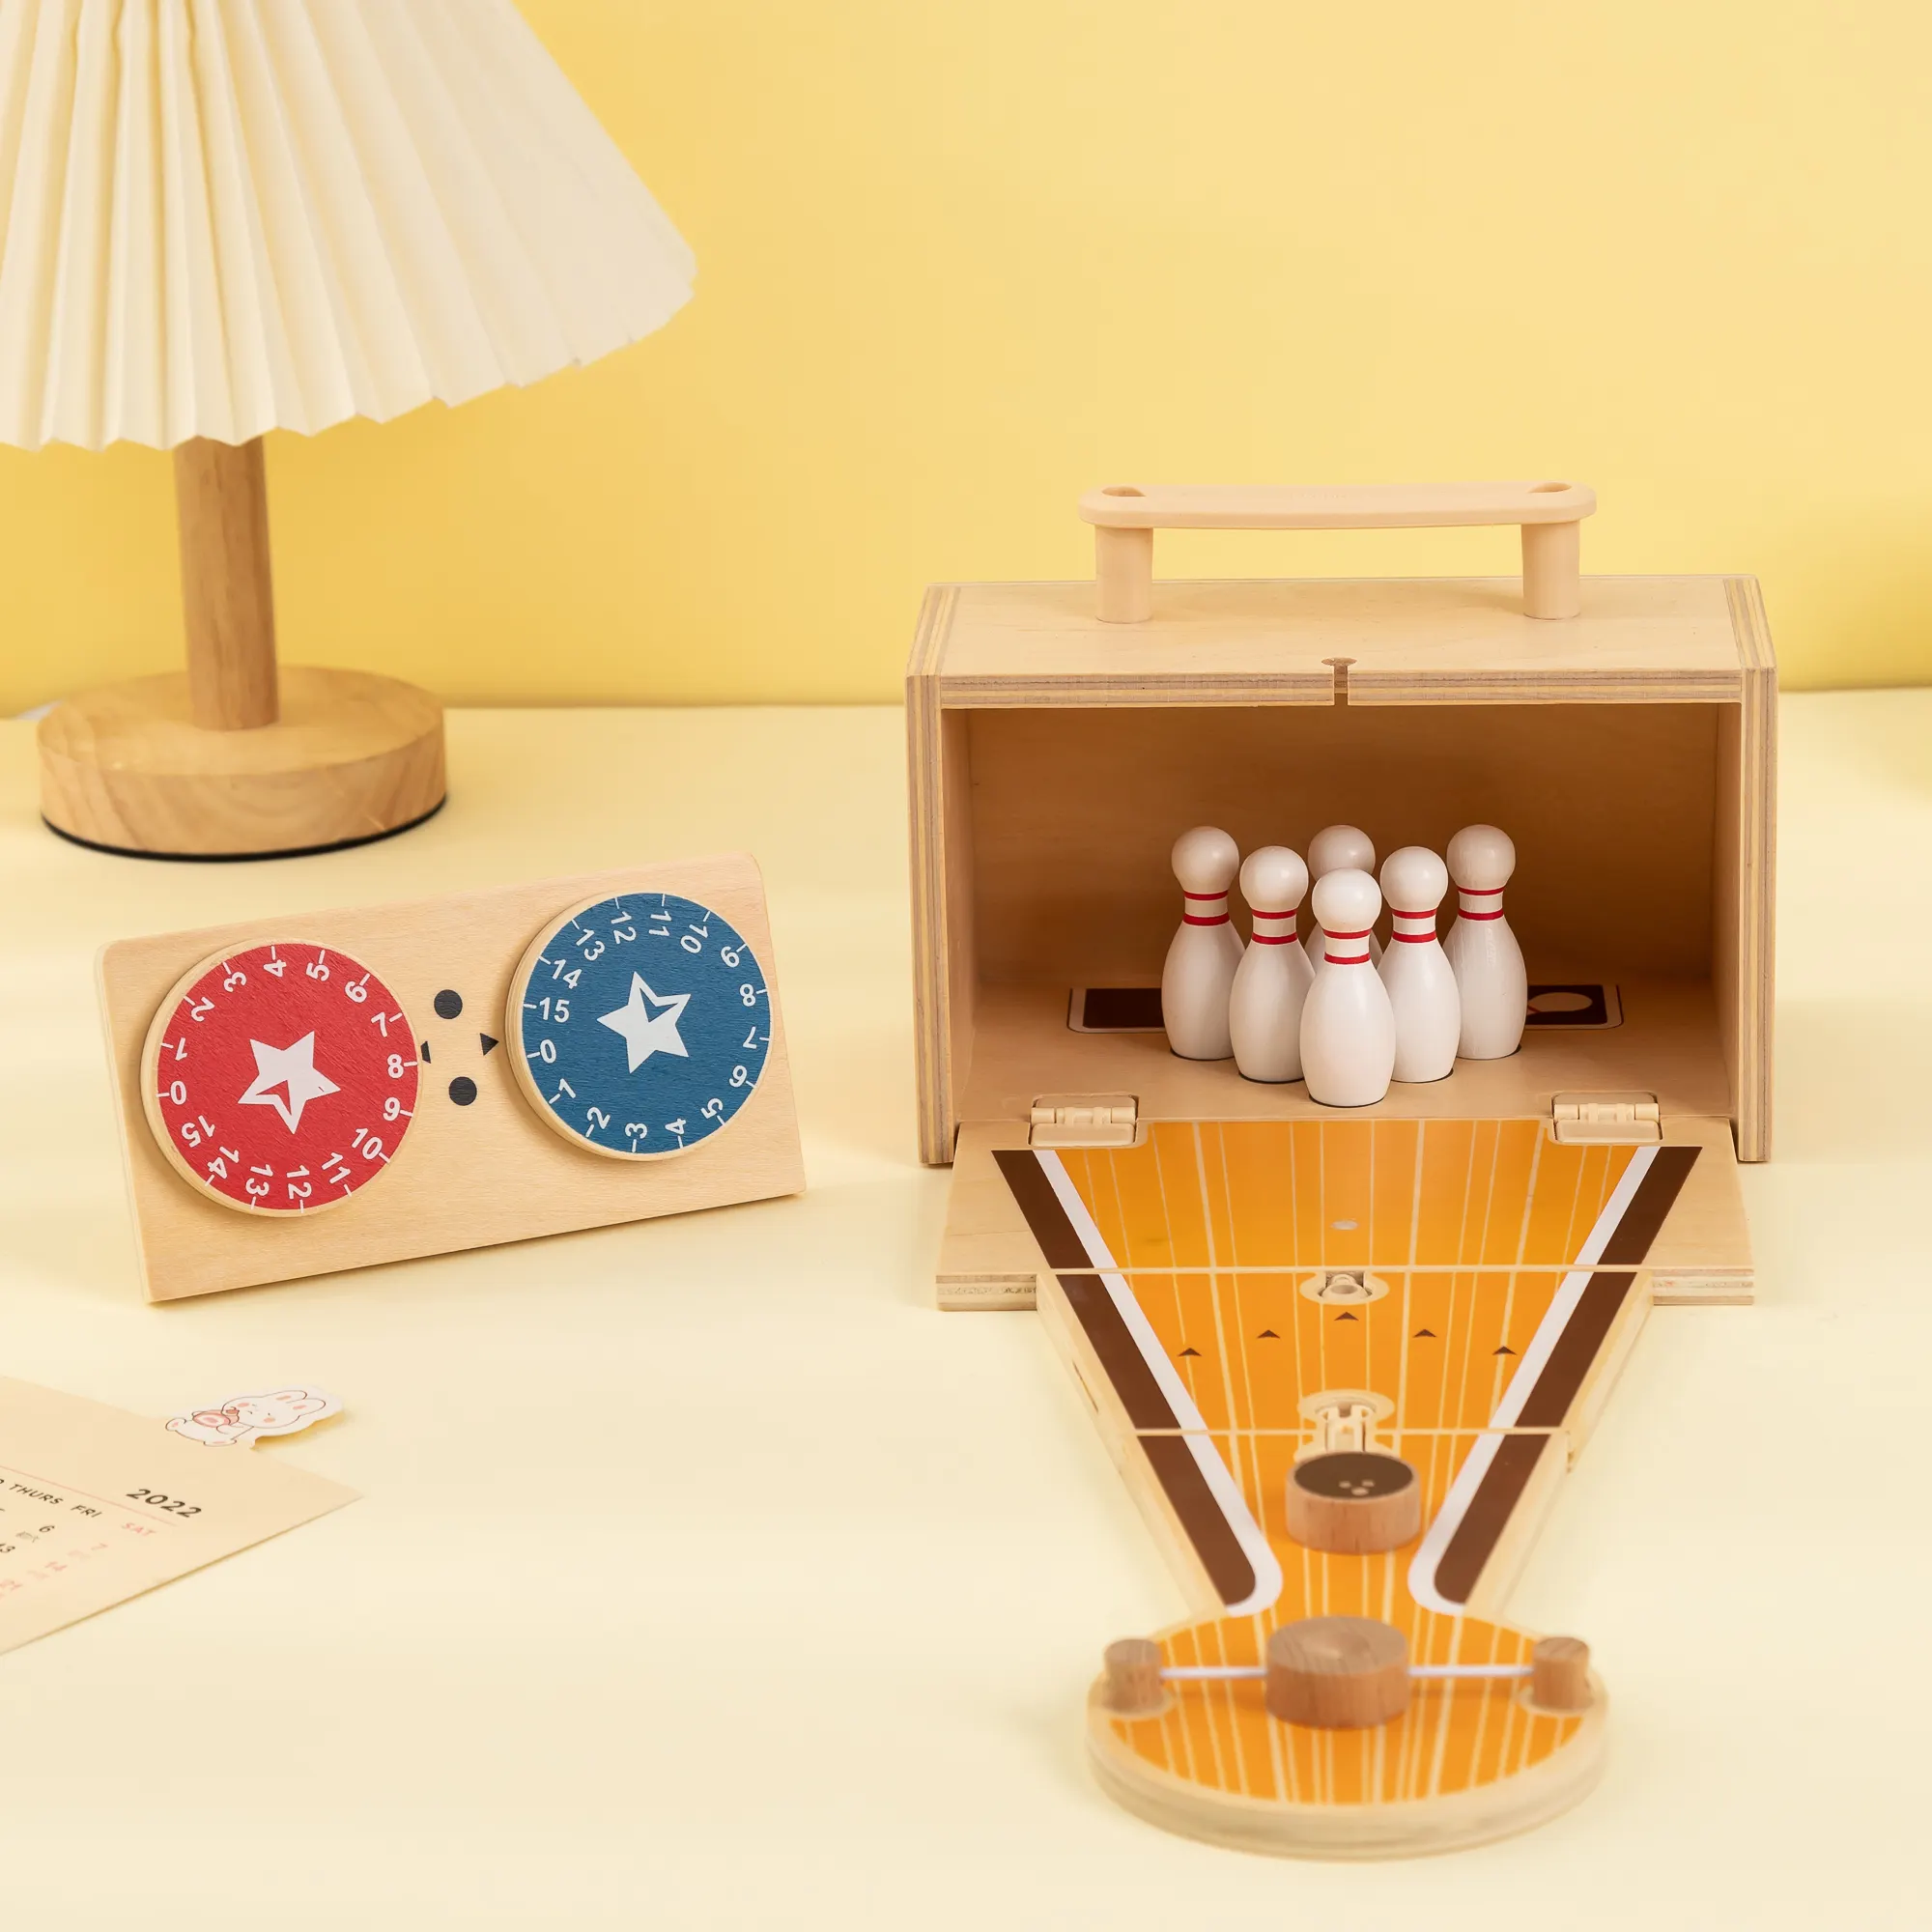 UDEAS बच्चों के लिए टेबल गेम खिलौने इंडोर टेबलटॉप मिनी लकड़ी के बॉलिंग गेम बच्चों के लिए